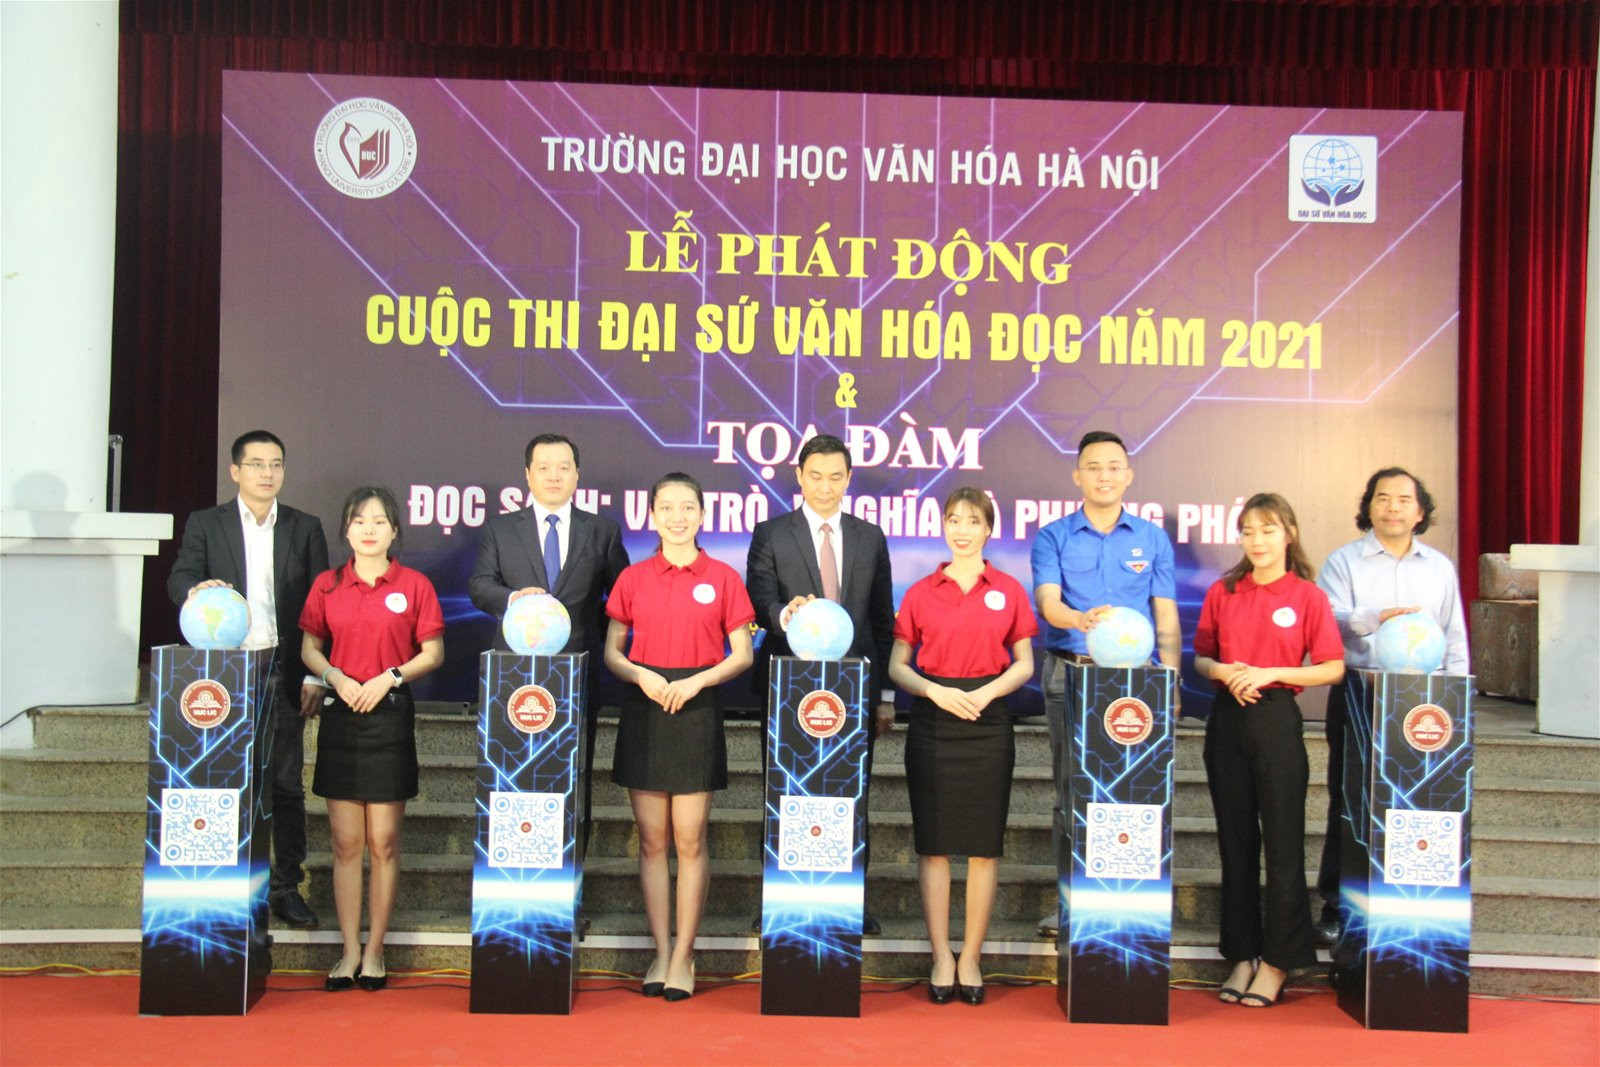 Trường Đại học Văn hóa Hà Nội phát động cuộc thi Đại sứ Văn hóa đọc 2021 - Ảnh 1.